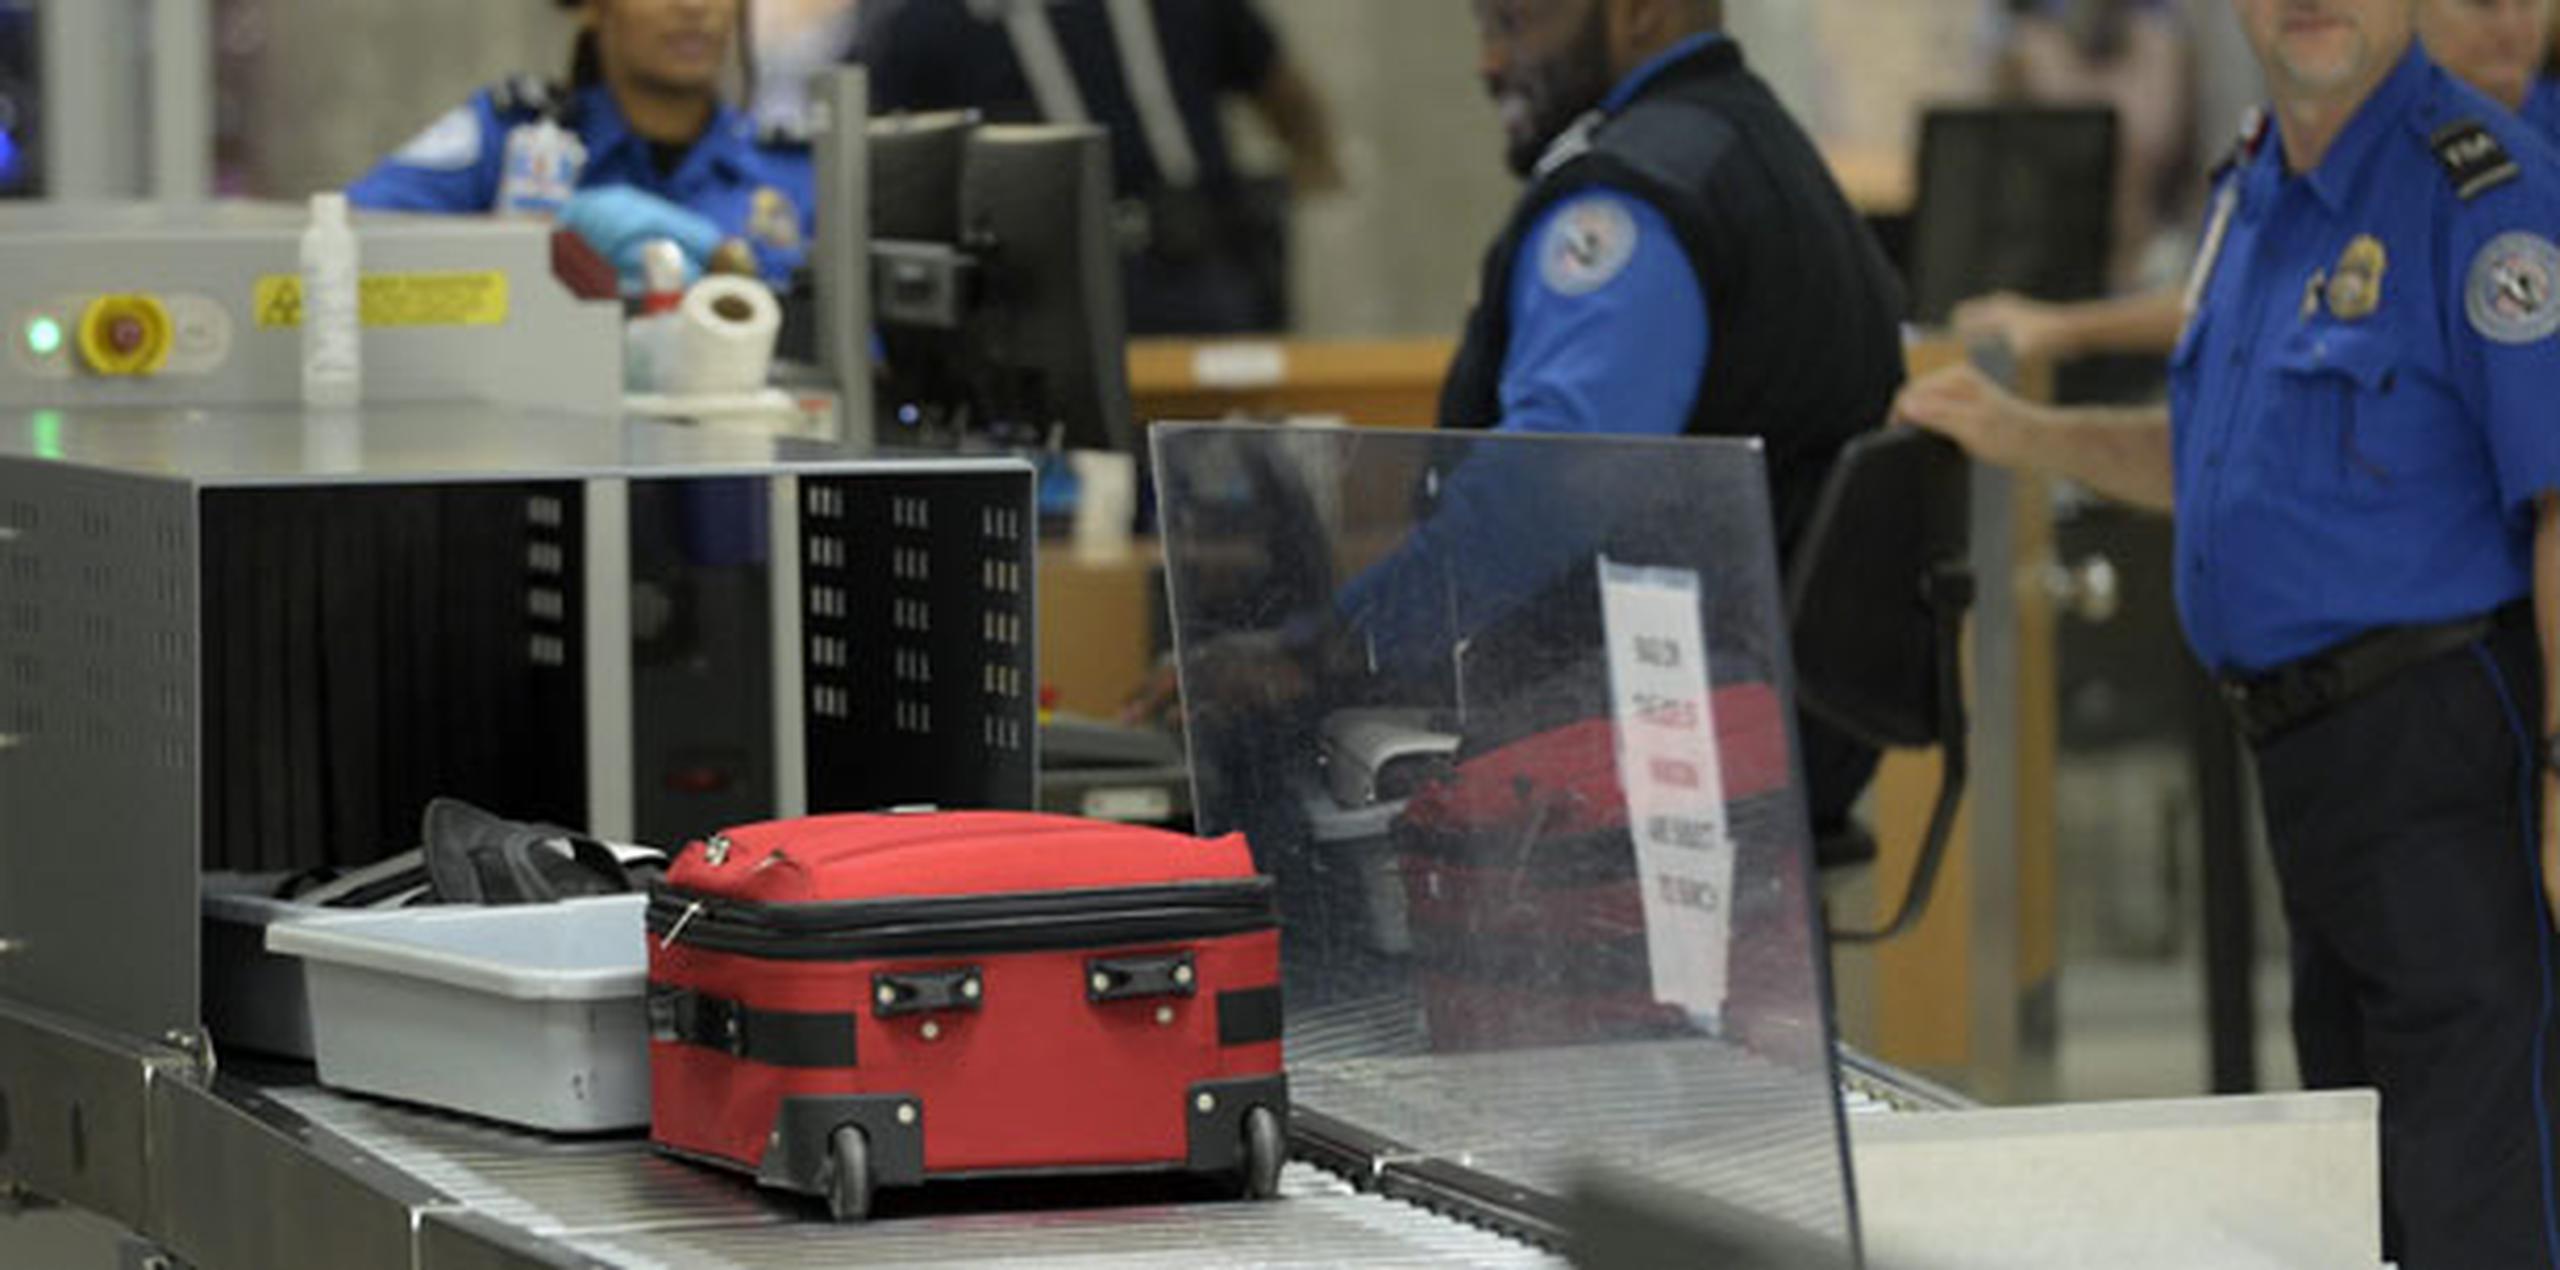 La TSA estaba trabajando con el aeropuerto de Atlanta y las aerolíneas “para maximizar todos los recursos operacionales disponibles en el aeropuerto”, dijo el portavoz Jim Gregory. (Archivo)